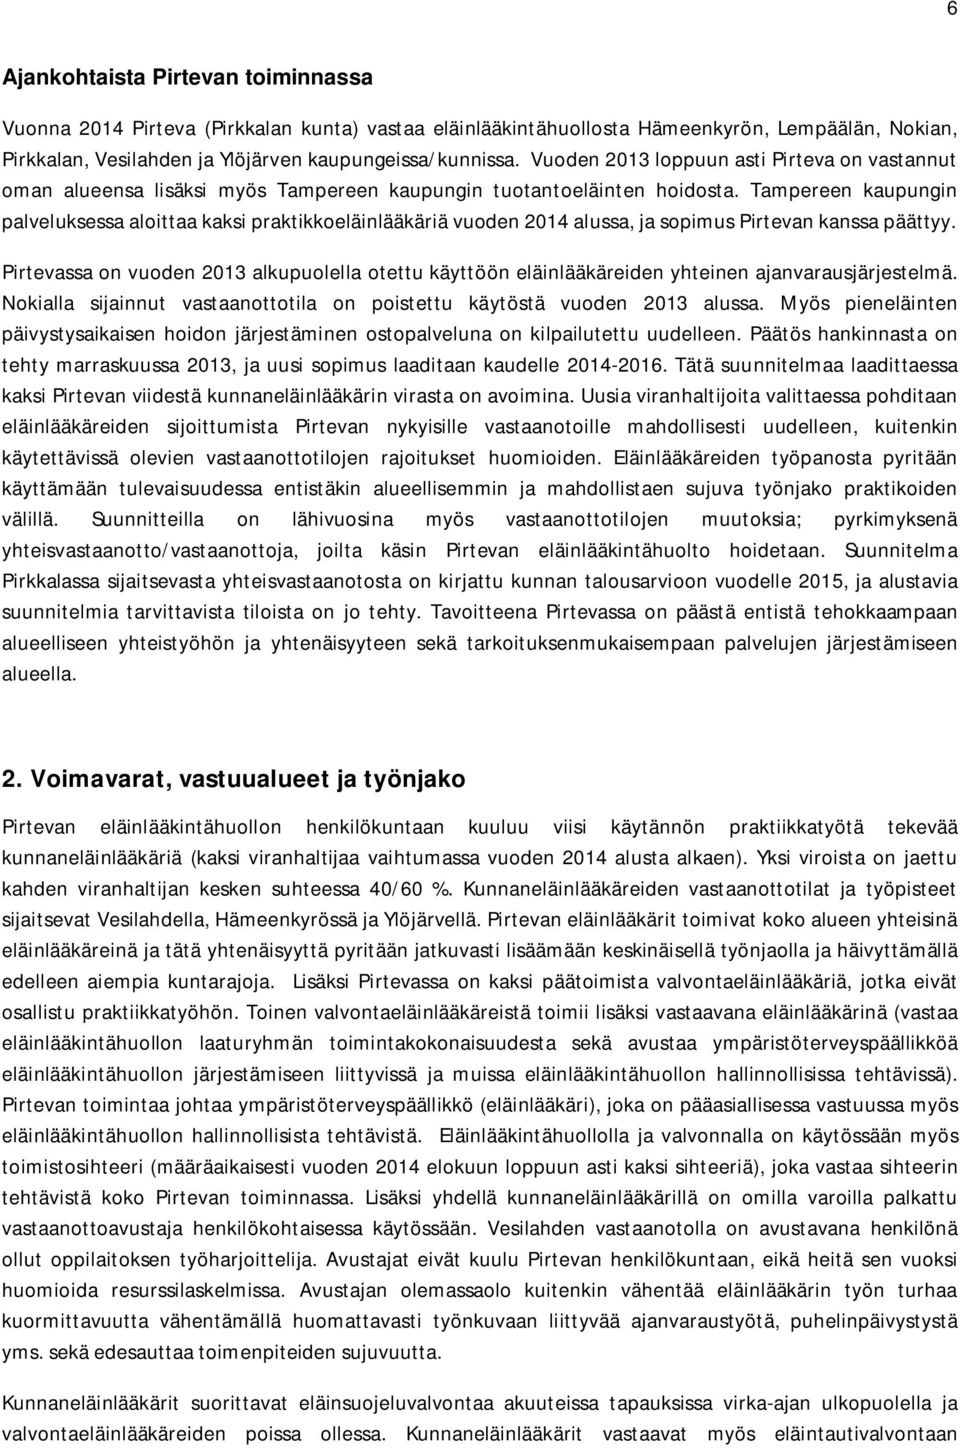 Tampereen kaupungin palveluksessa aloittaa kaksi praktikkoeläinlääkäriä vuoden 2014 alussa, ja sopimus Pirtevan kanssa päättyy.